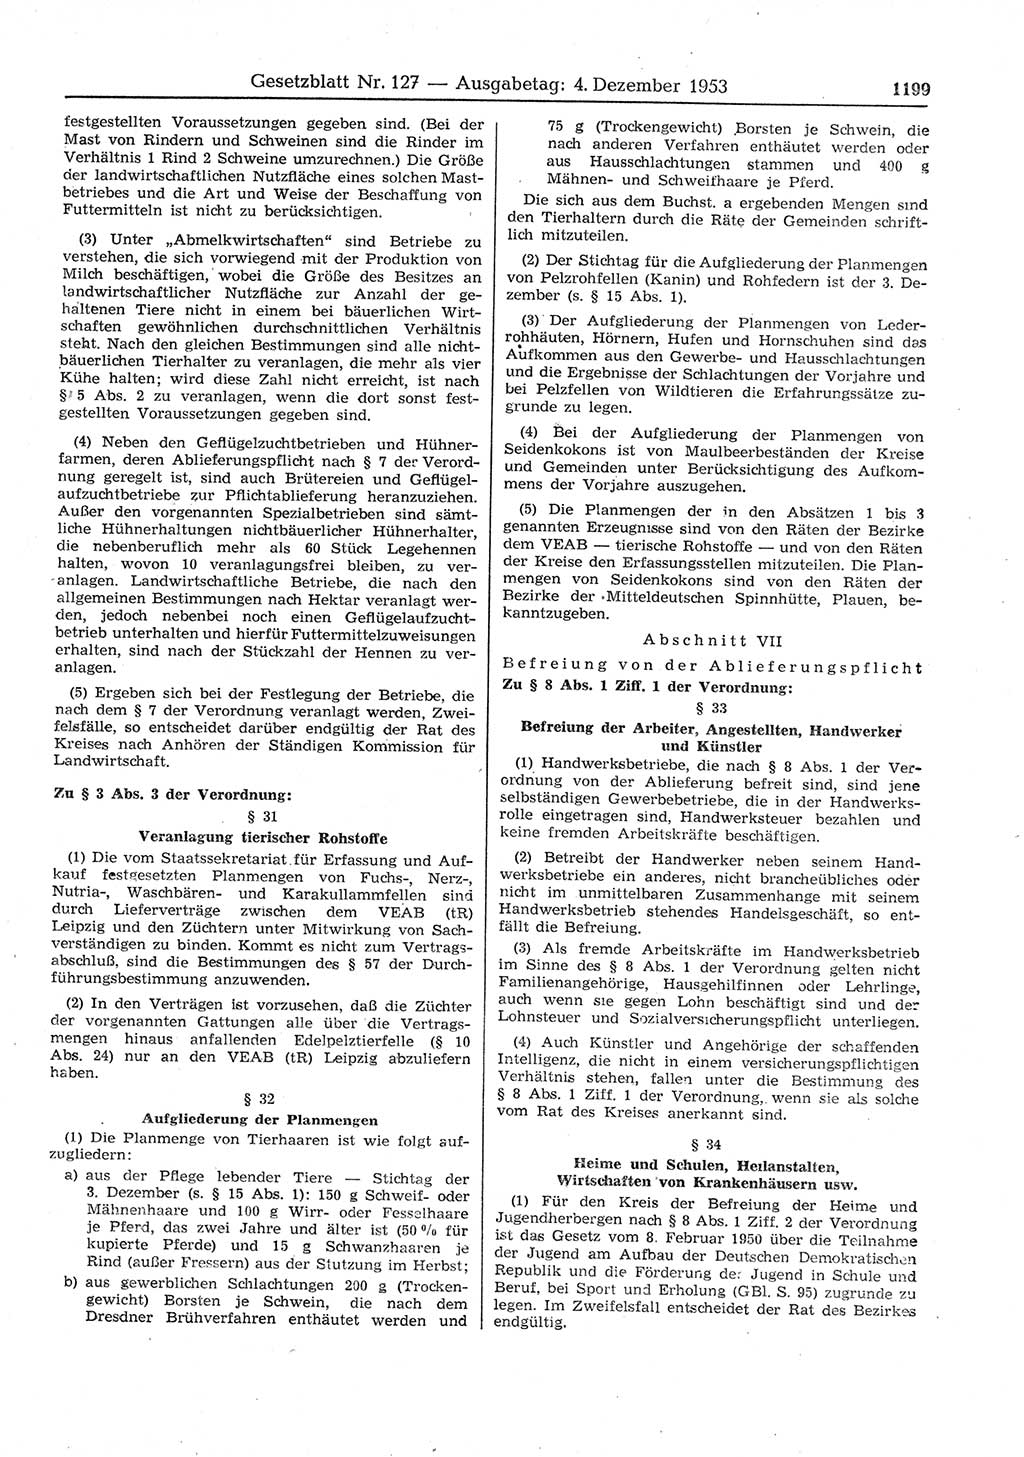 Gesetzblatt (GBl.) der Deutschen Demokratischen Republik (DDR) 1953, Seite 1199 (GBl. DDR 1953, S. 1199)